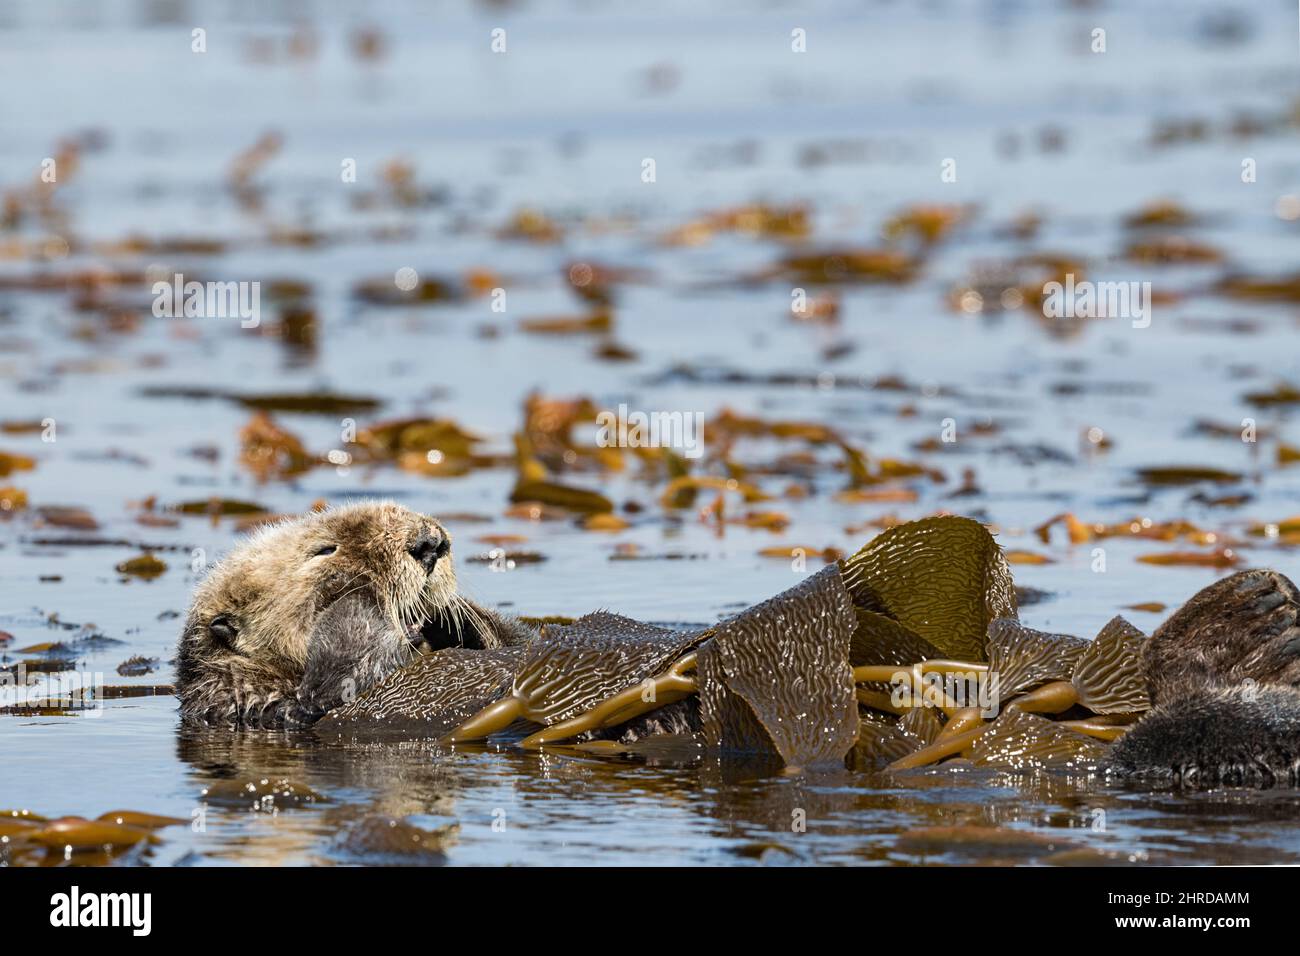 Kalifornischer Seeotter, Enhyrdra lutris nereis ( bedrohte Arten ), in Seetang eingewickelt, um sich während der Ruhephase an Ort und Stelle zu halten, Monterey Bay, Kalifornien Stockfoto